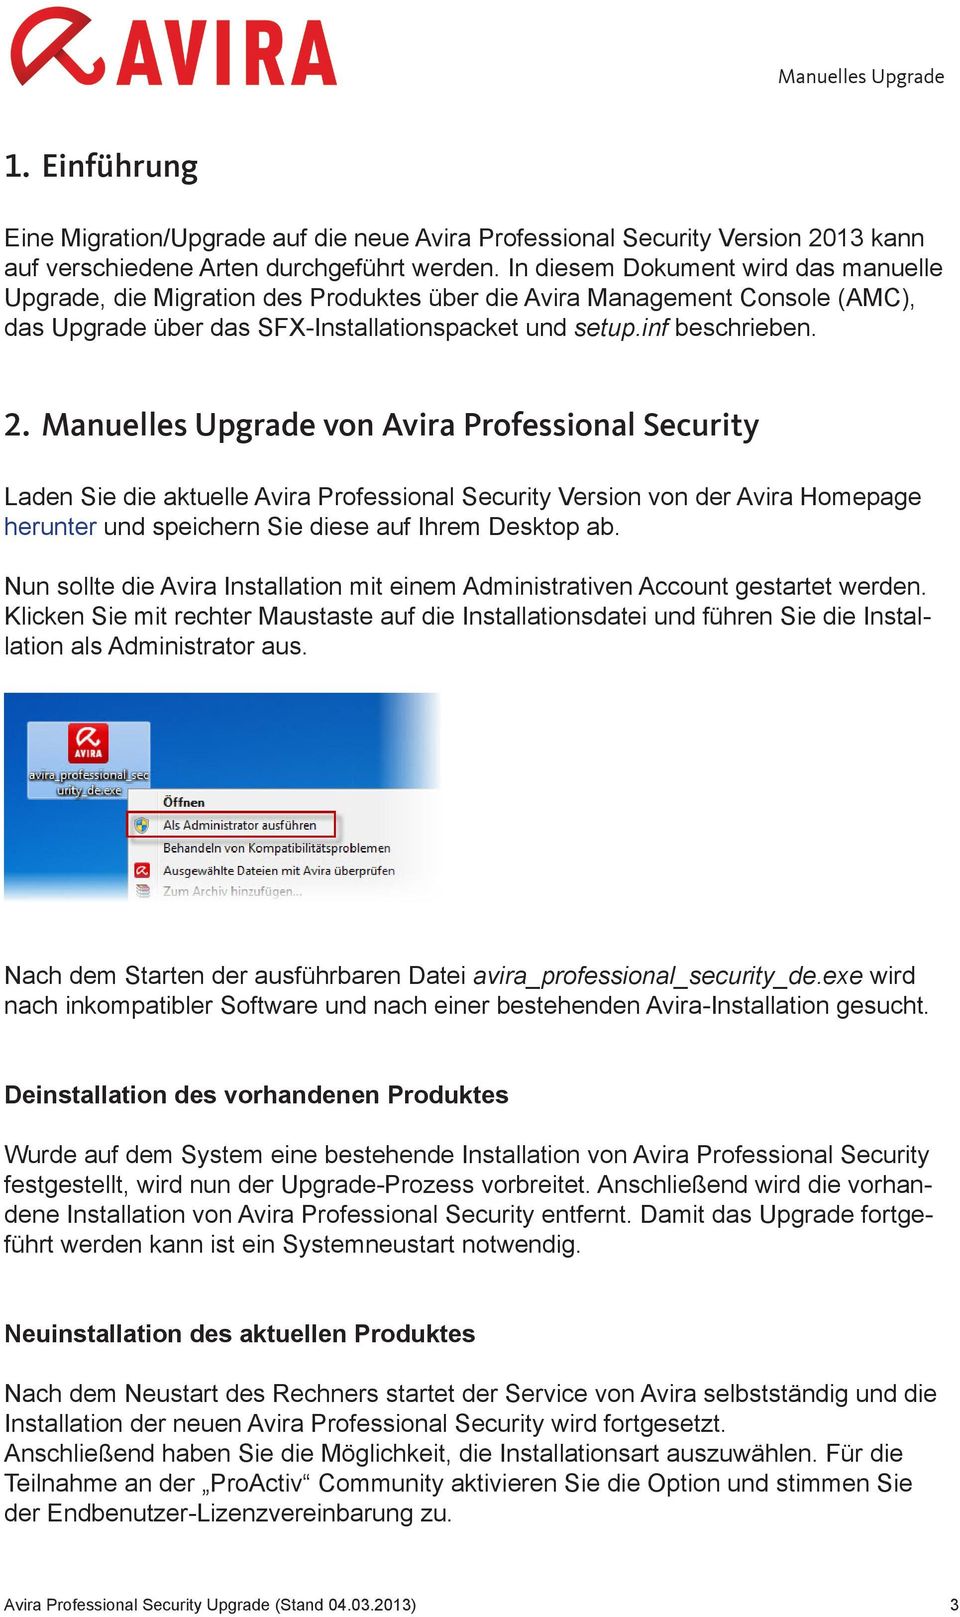 Manuelles Upgrade von Avira Professional Security Laden Sie die aktuelle Avira Professional Security Version von der Avira Homepage herunter und speichern Sie diese auf Ihrem Desktop ab.